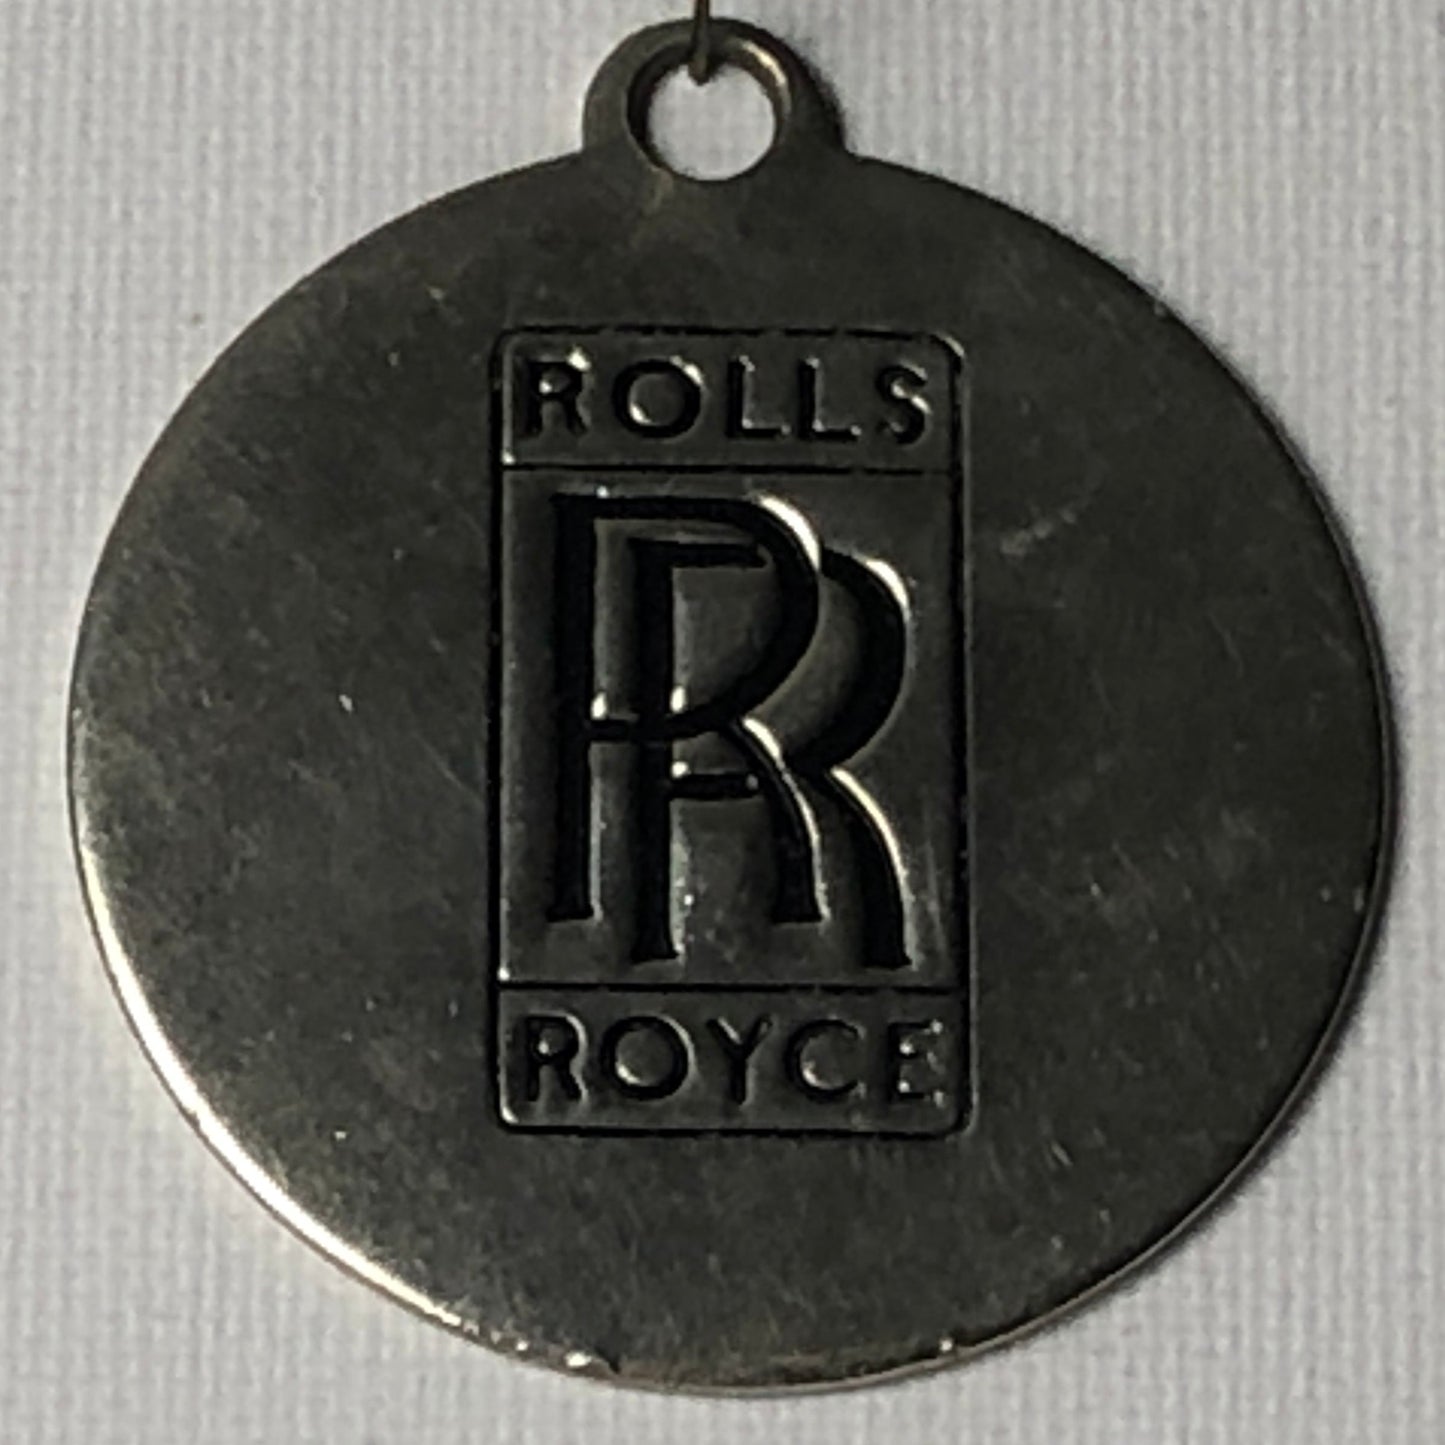 Rolls-Royce, Portachiavi Placche in Metallo Con Stemma Rolls-Royce, Varie Dimensioni e Vari Stemmi - Raggi's Collectibles' Automotive Art